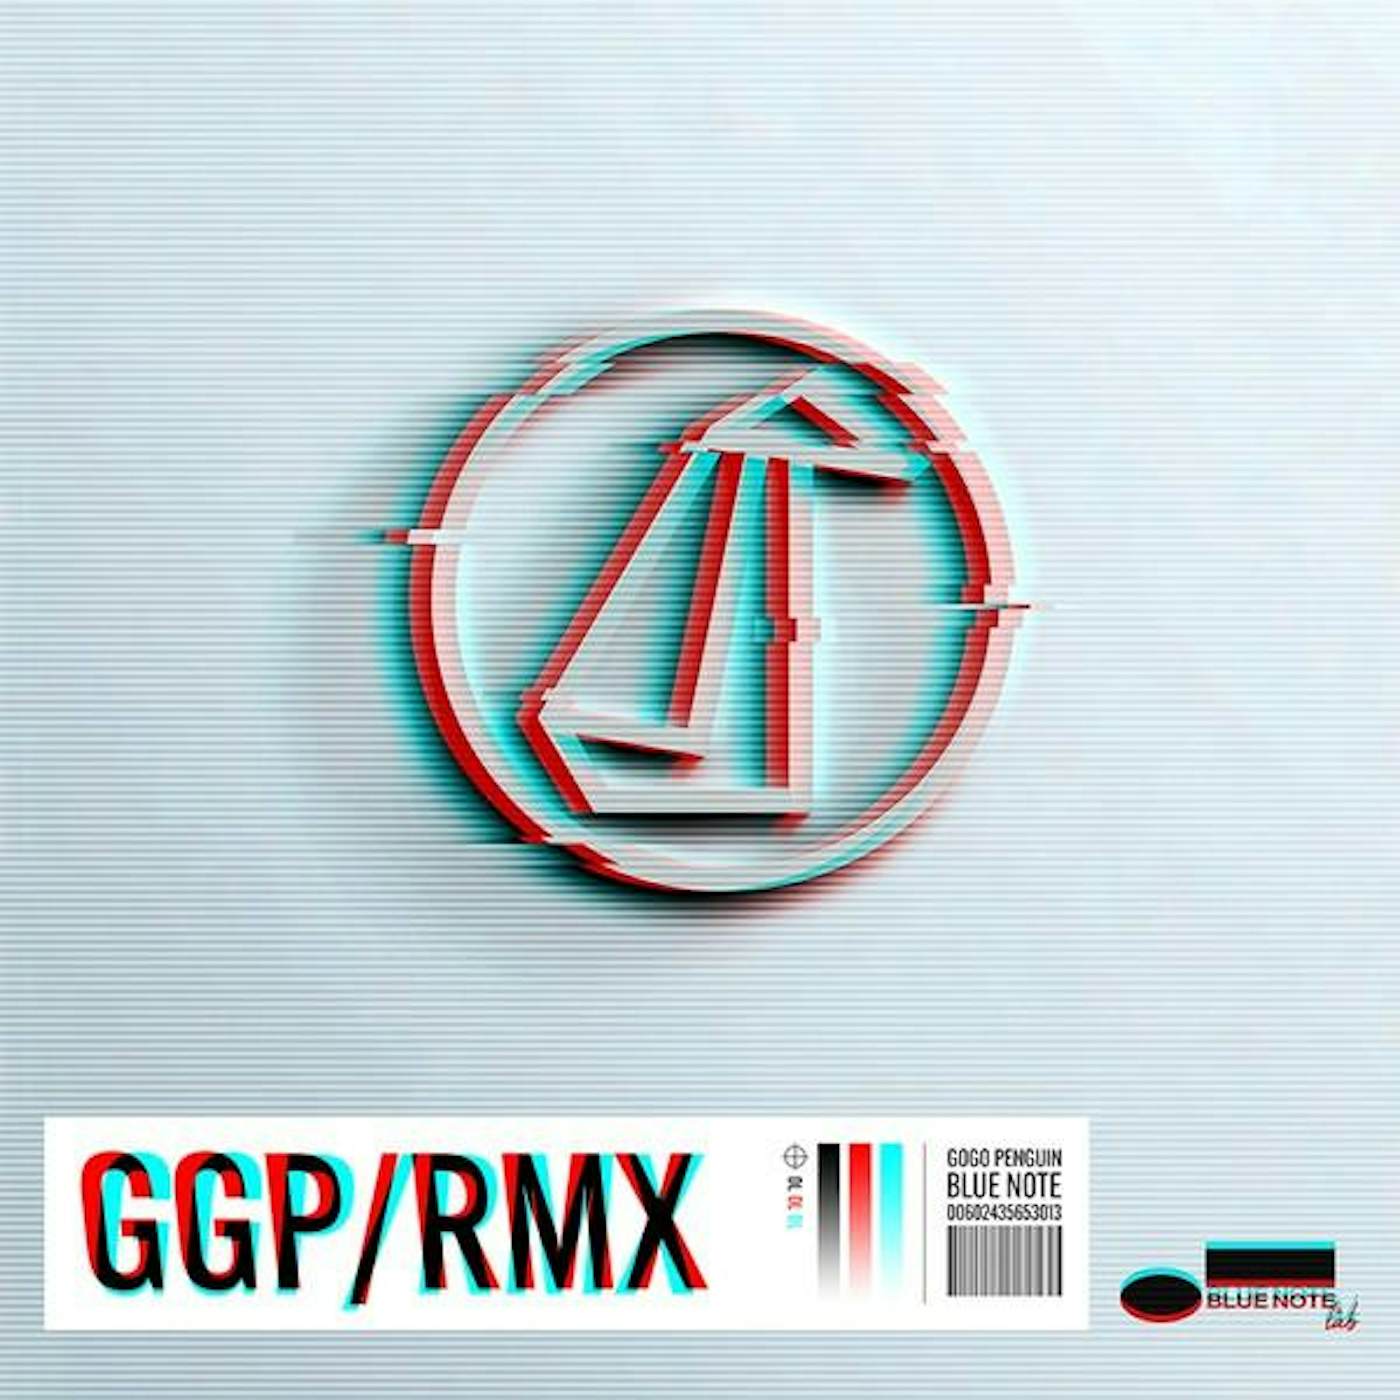 GoGo Penguin GGP / RMX CD